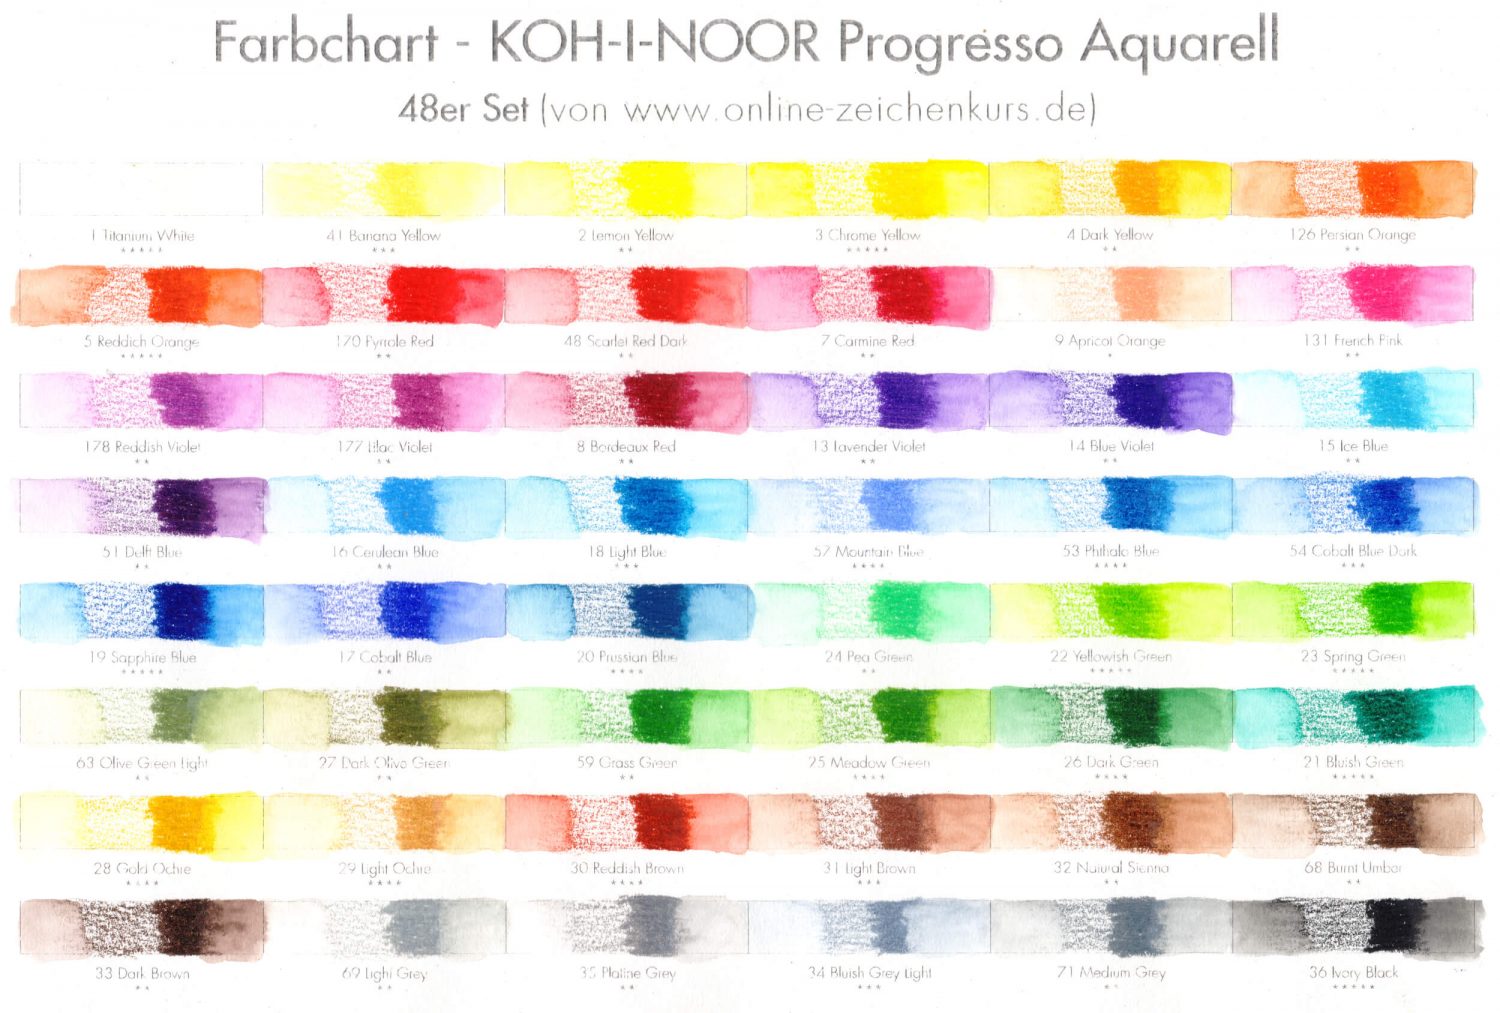 Farbchart KOH-I-NOOR Progresso Aquarellvollminenstifte ausgefüllt und mit Wasser vermalt